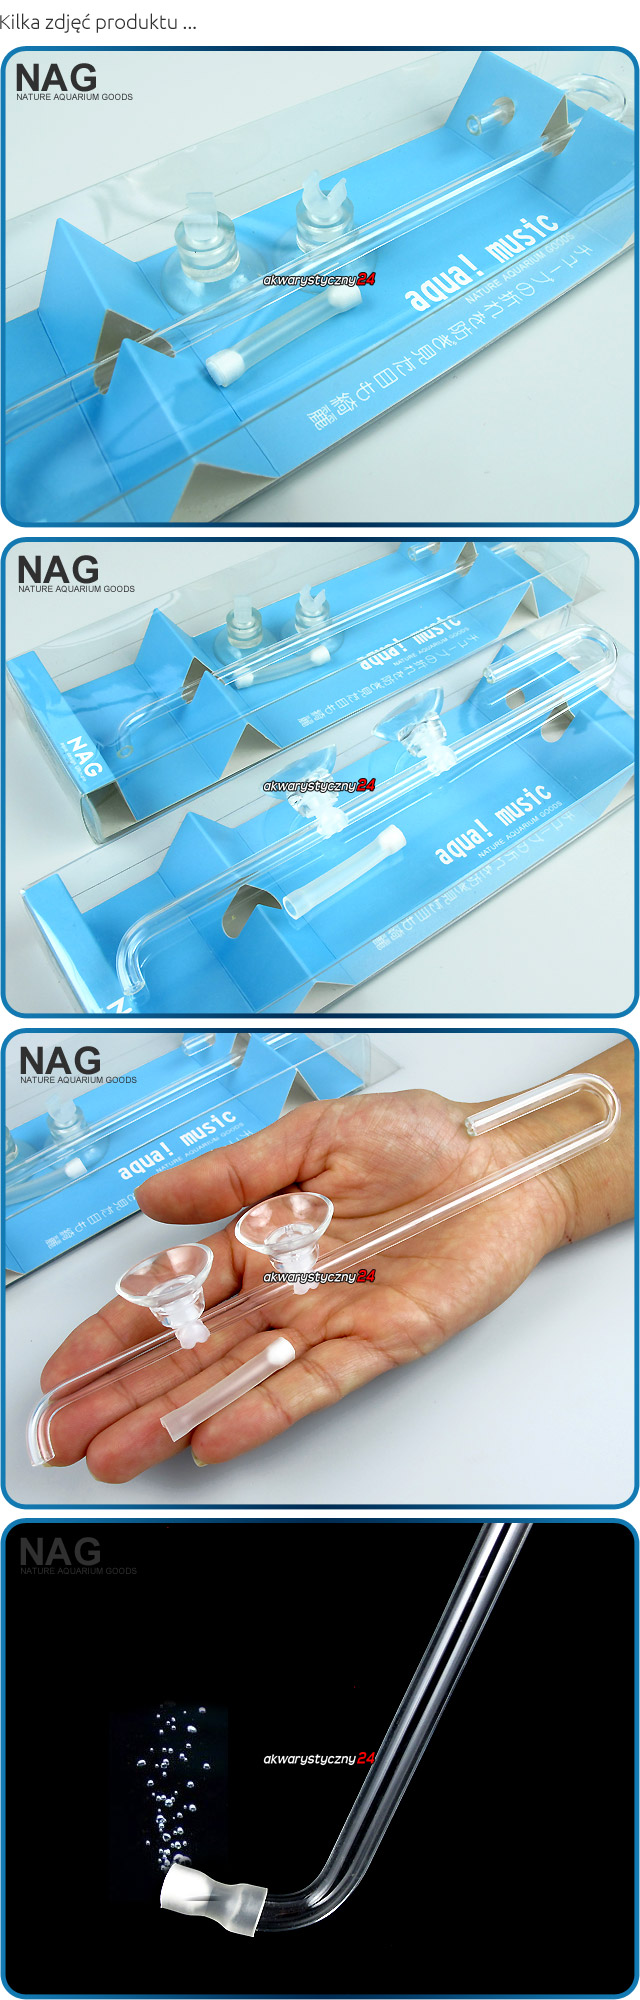 NAG AIR PIPE DIFFUSER (Mini) - Estetyczny dyfuzor tlenu z najmniejszym na świecie kamieniem napowietrzajacym